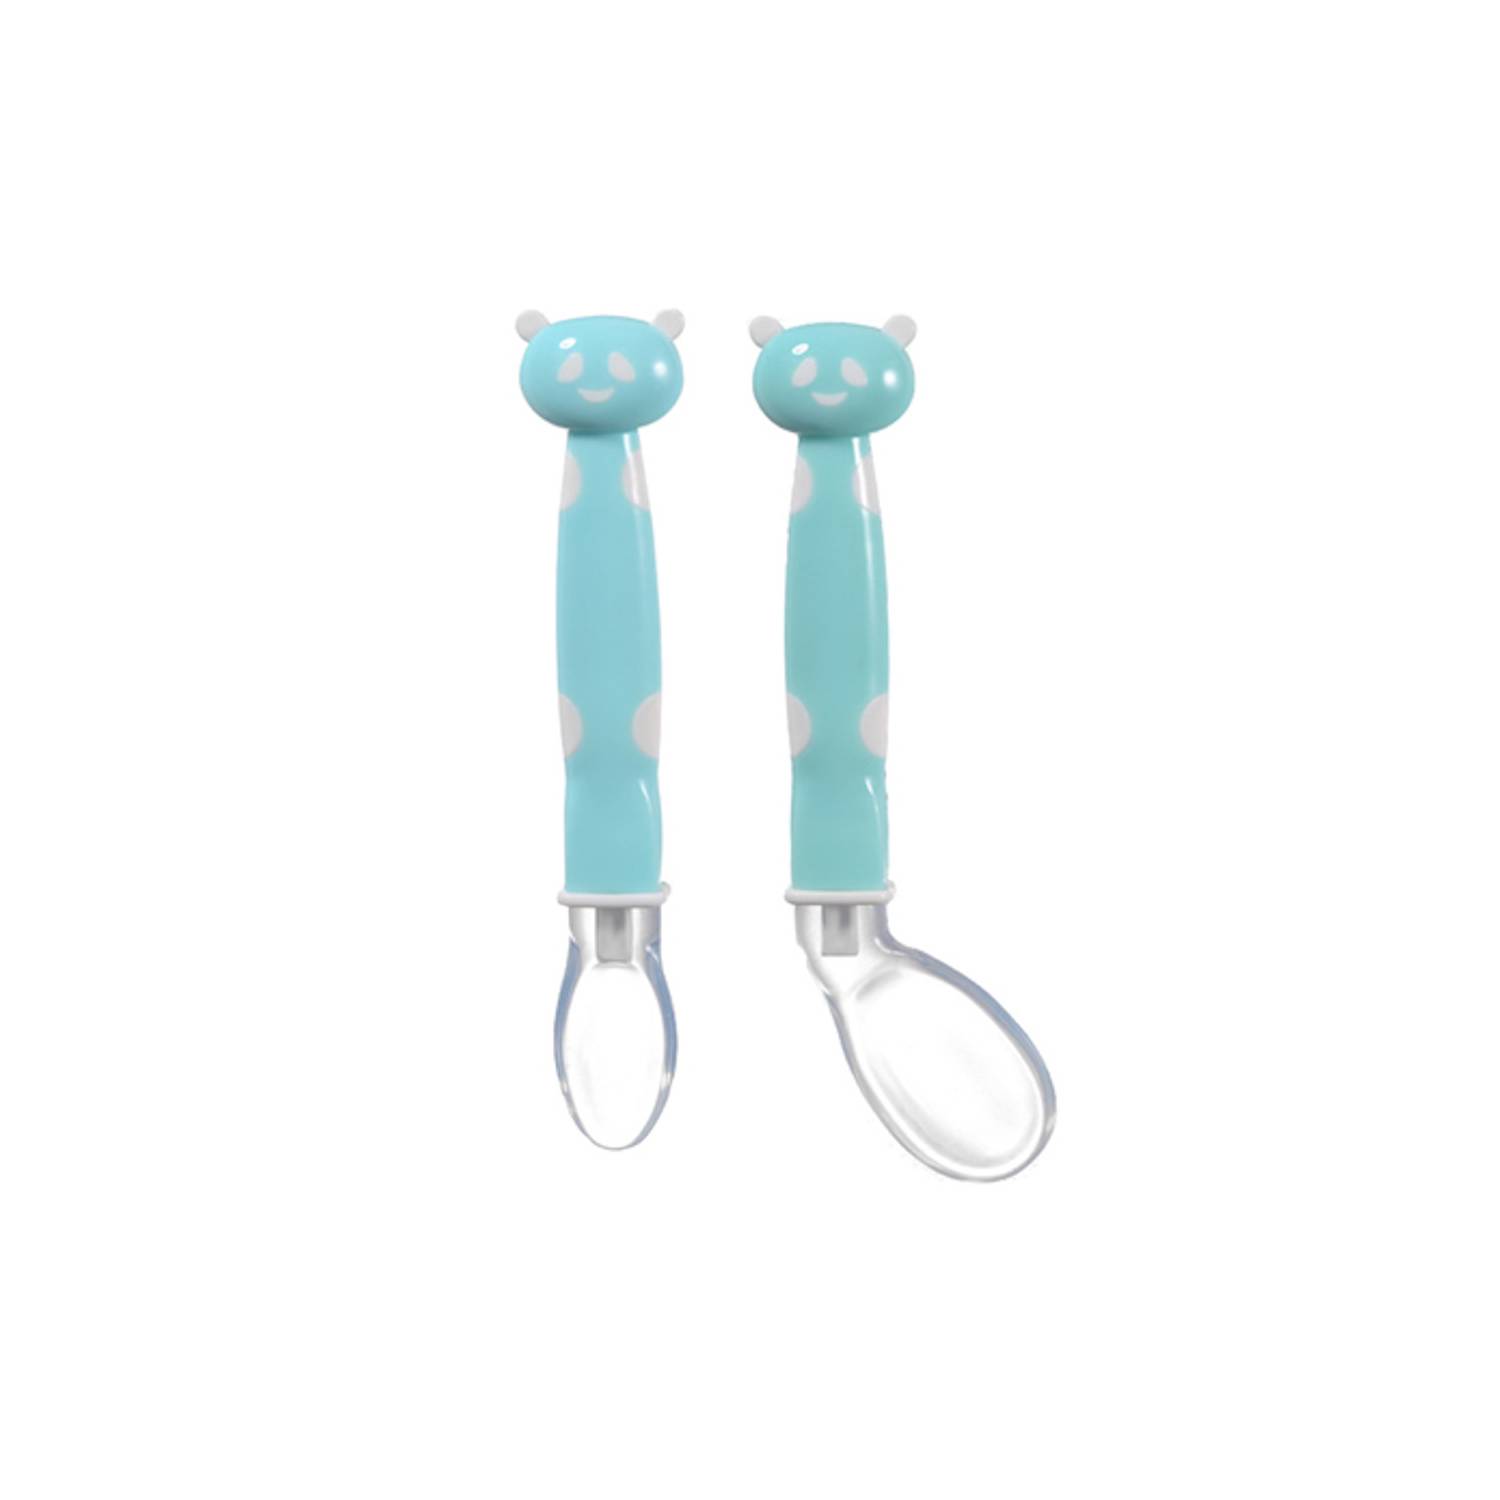 Juego de 2 cucharas de silicona para bebés (azul), herramientas de  aprendizaje de cucharas para bebés, adecuadas para la primera etapa de la  dentición, recomendadas por expertos en destete JM